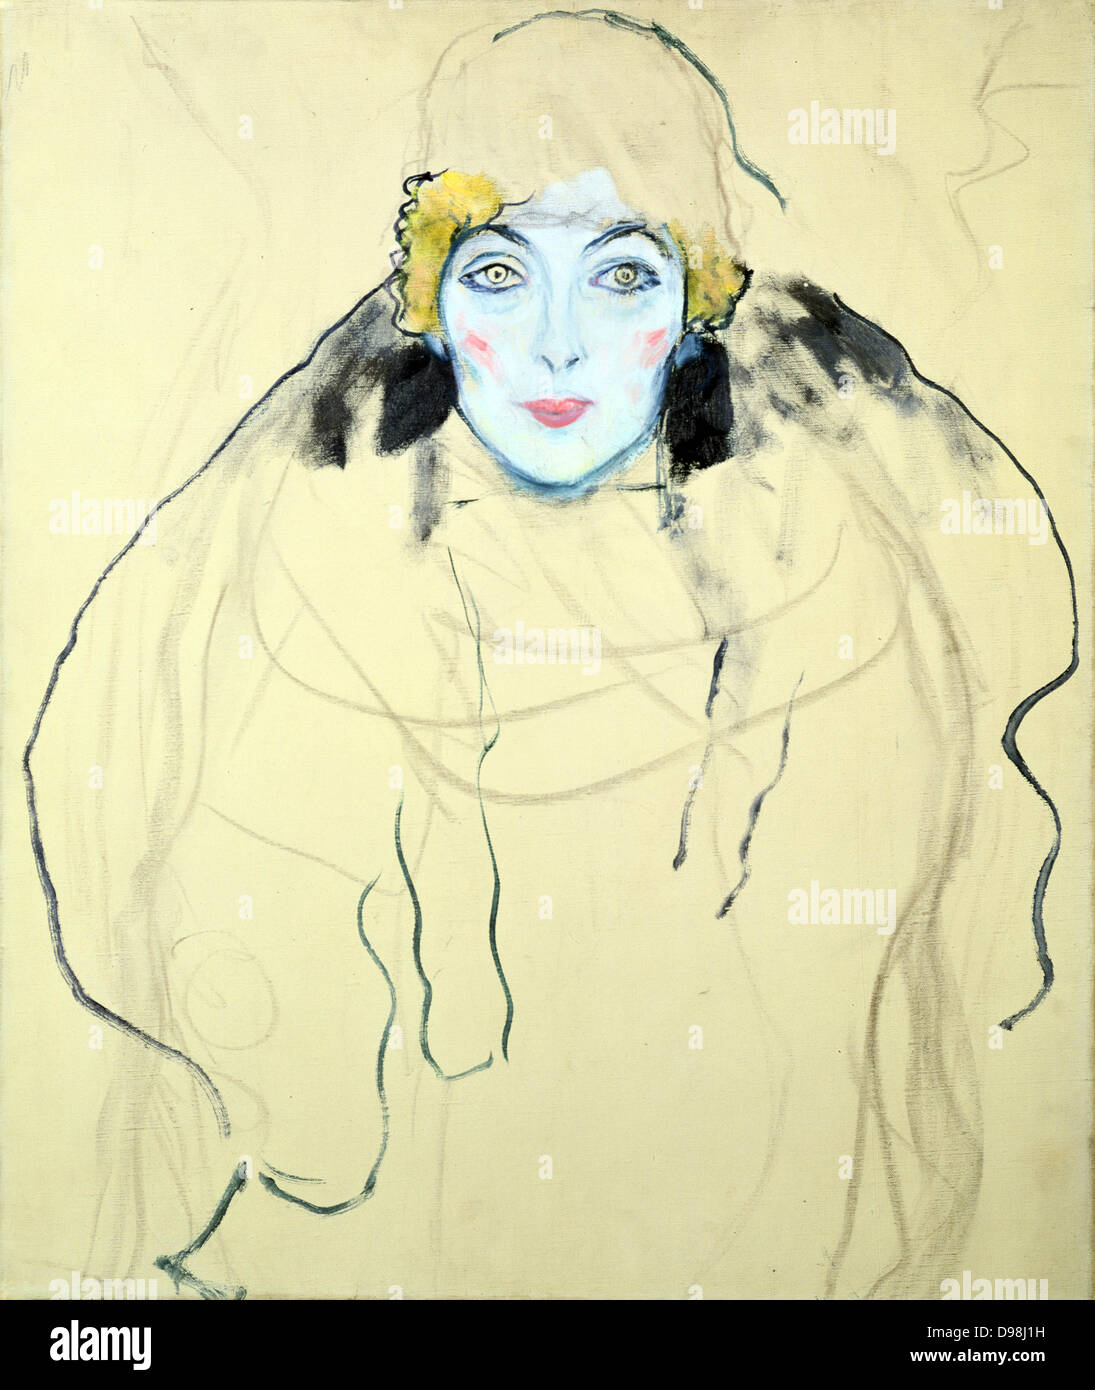 Frauen Kopf" (testa di donna) 1917-1918. Olio su legno di Gustav Klimt (1862-1919) austriaco pittore simbolista. Foto Stock